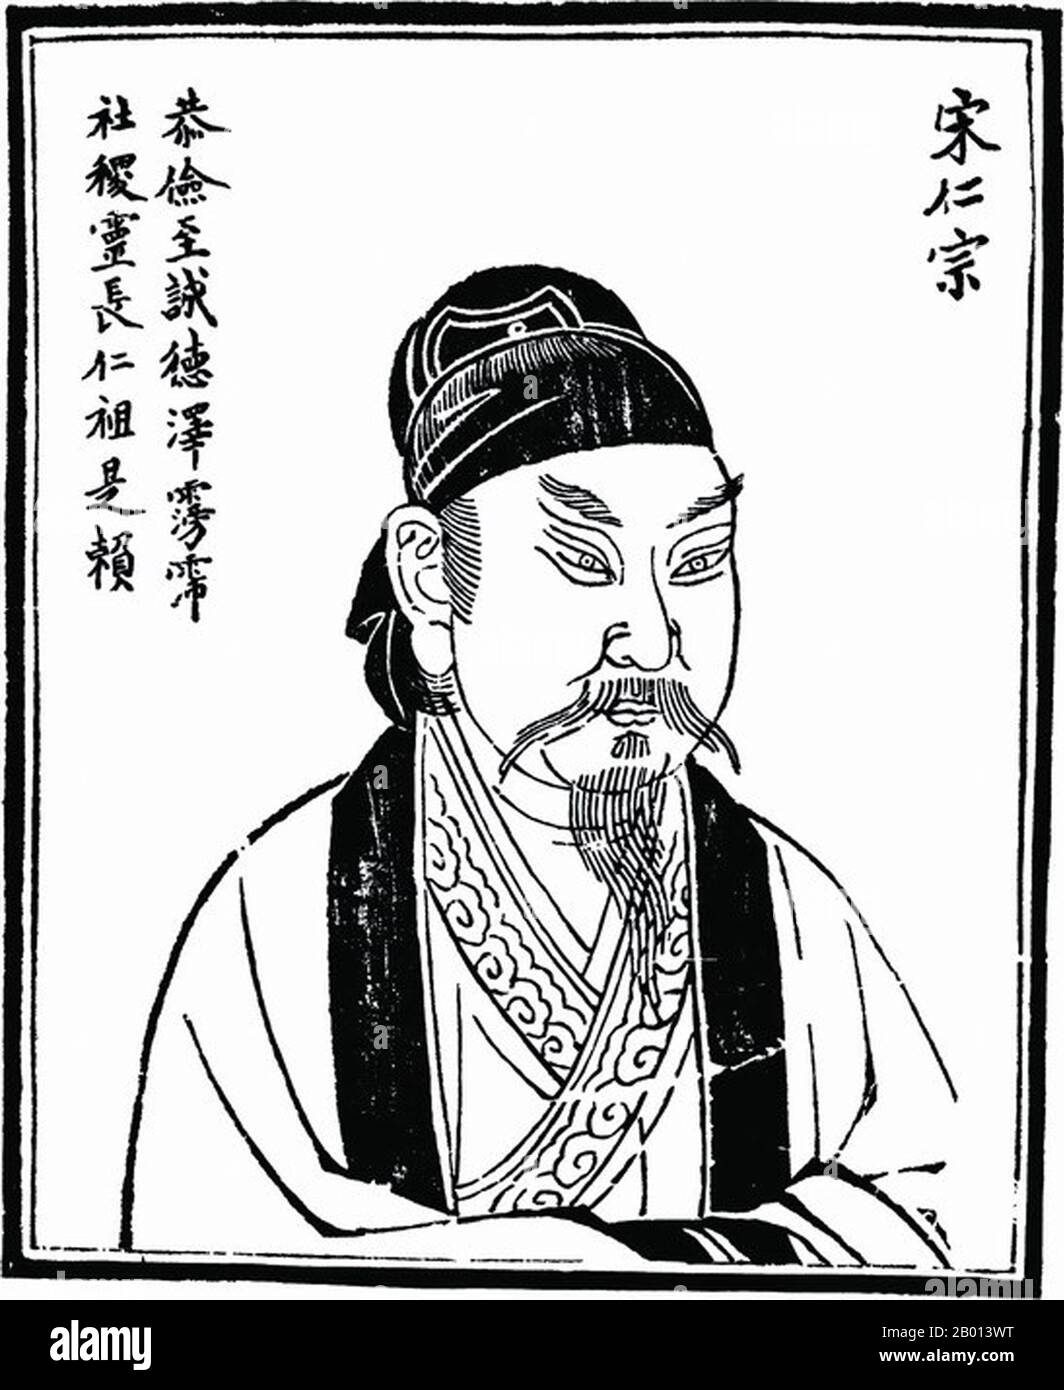 Cina: Imperatore Zhengzong (Zhao Heng, 23 dicembre 968 - 23 marzo 1022), 3° sovrano della dinastia (nord) della canzone (r. 997-1022). Illustrazione, c. 18 ° secolo. Zhenzong di Song, nome personale Zhao Heng e precedentemente conosciuto come Zhao Dechang, Zhao Yuanxiu e Zhao Yuankan, fu il terzo imperatore della dinastia Song. Il suo regno fu notato per il consolidamento del potere e per il rafforzamento della dinastia. Il paese prosperò, e la sua potenza militare fu ulteriormente rafforzata. Foto Stock